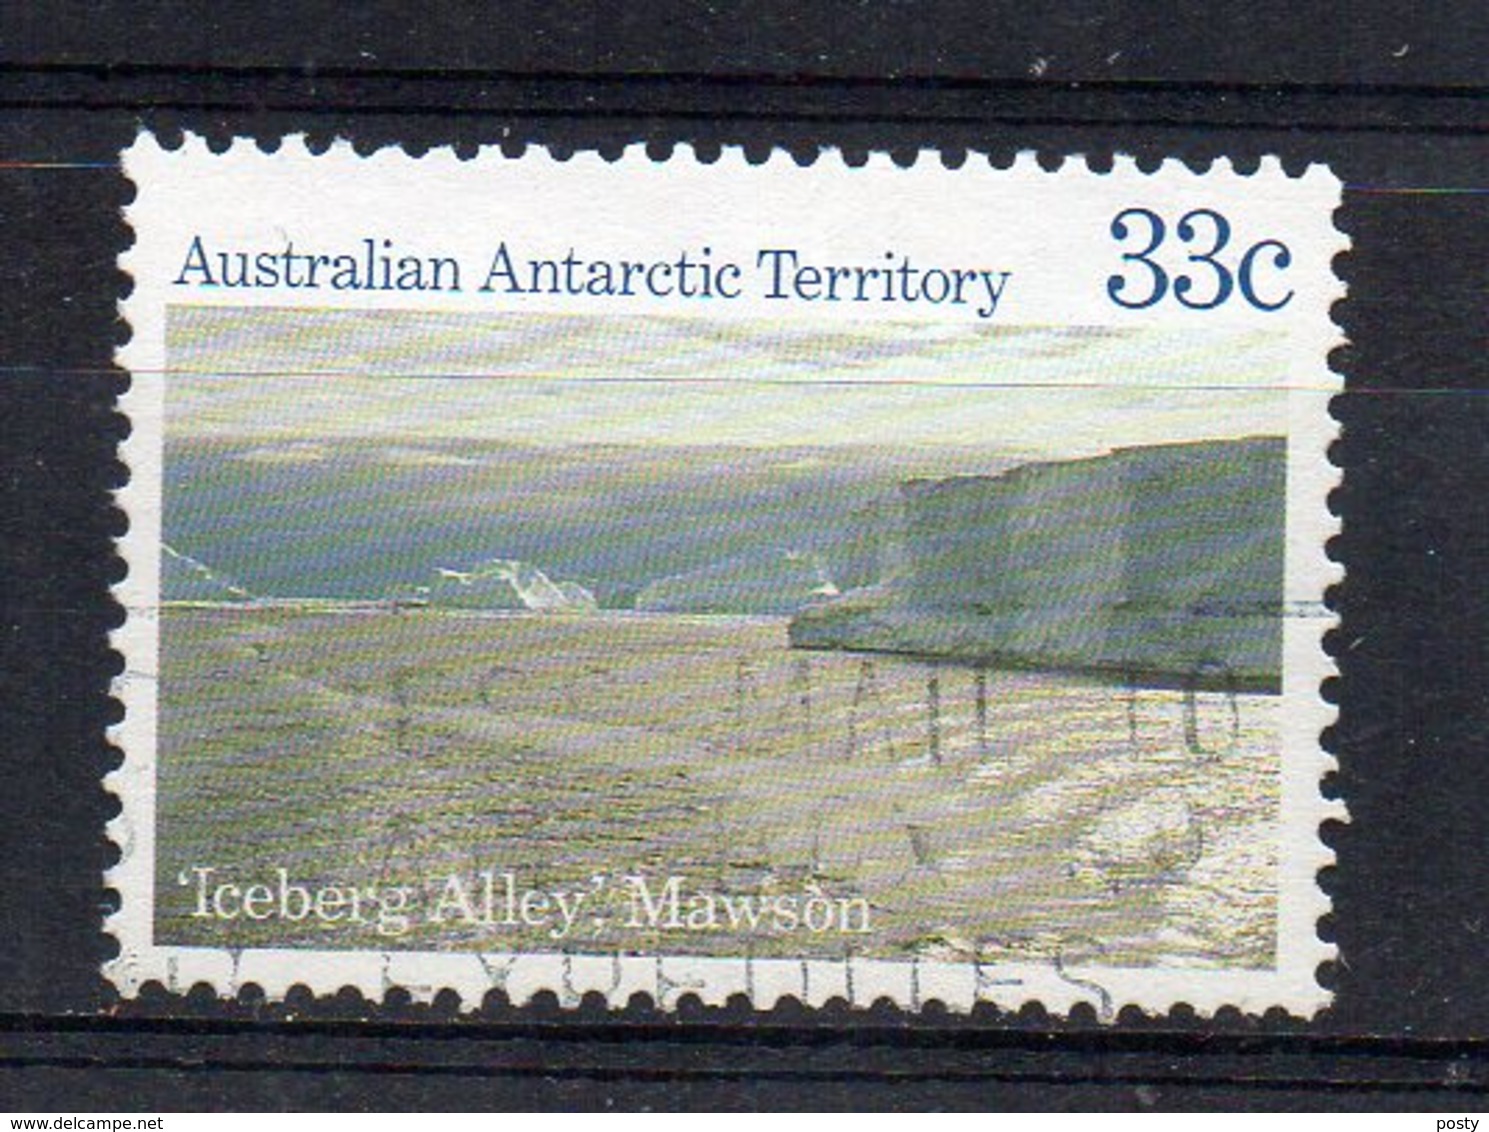 TERRITOIRE ANTARCTIQUE AUSTRALIEN - AUSTRALIAN ANTARCTIC TERRITORIES - 1984 - ICEBERG ALLEY MAWSON - Oblitéré - Used - - Oblitérés